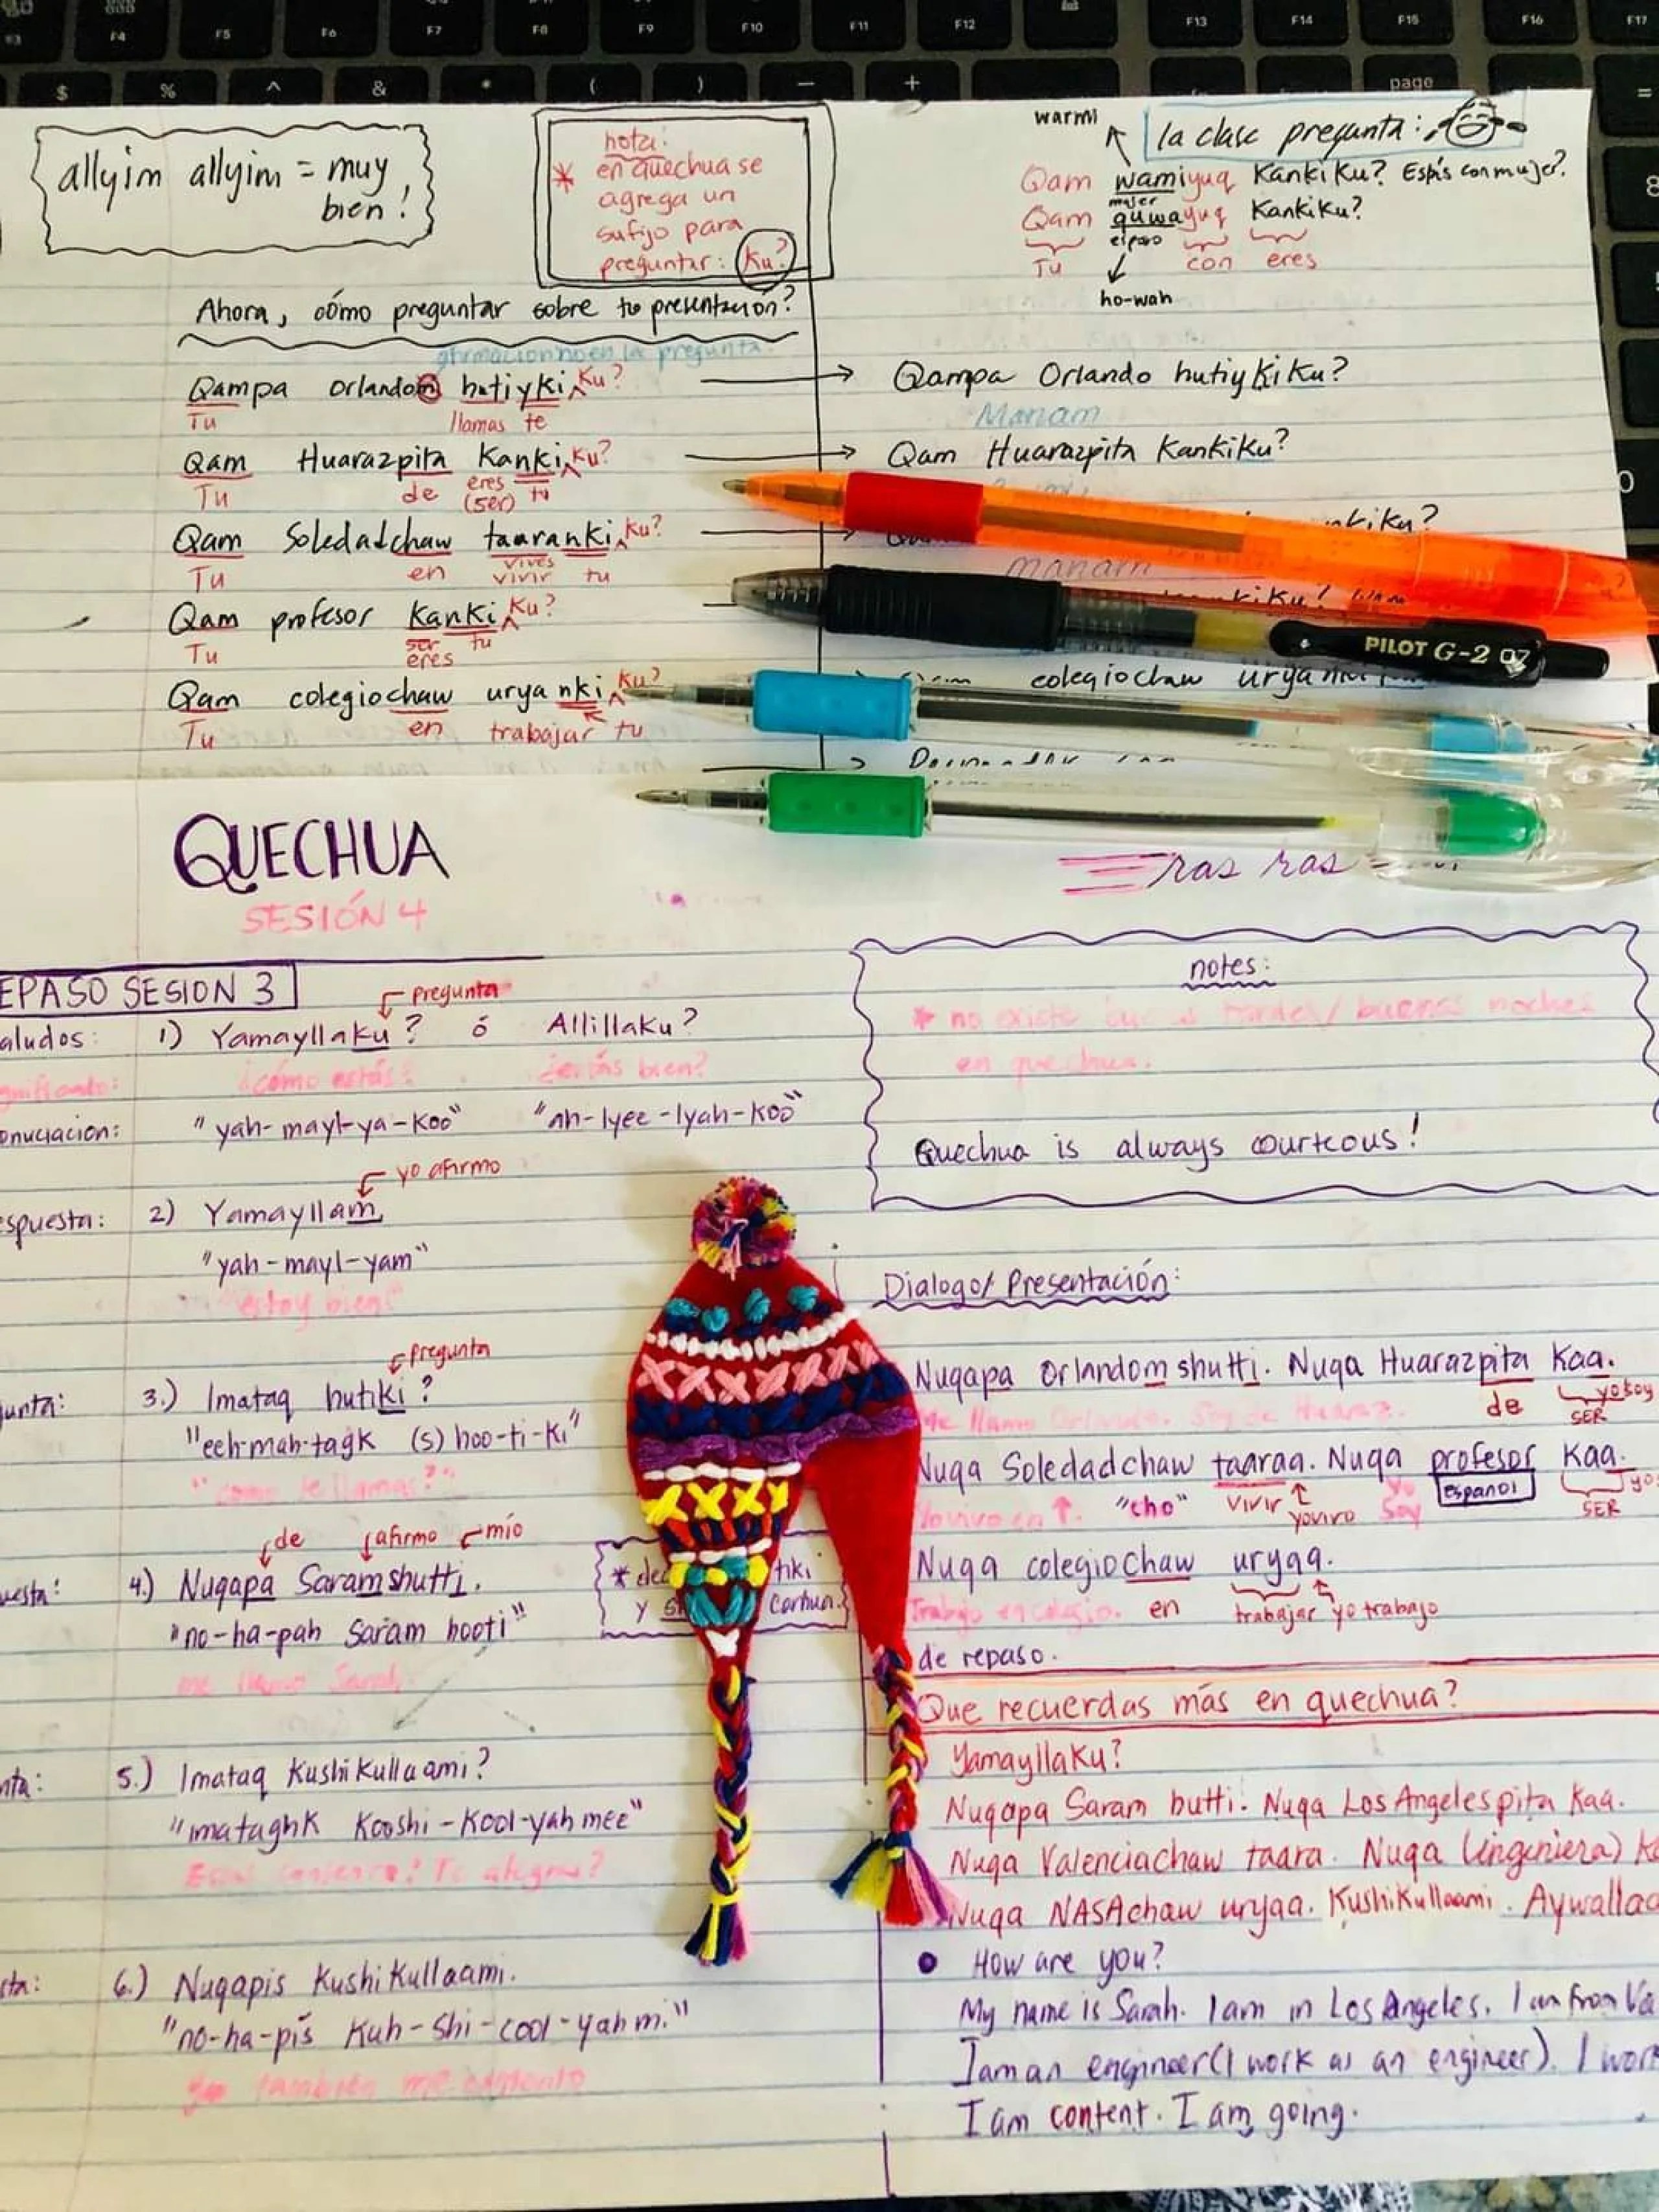 Notas tomadas por Sarah Yearicks en una de sus clases de quechua.